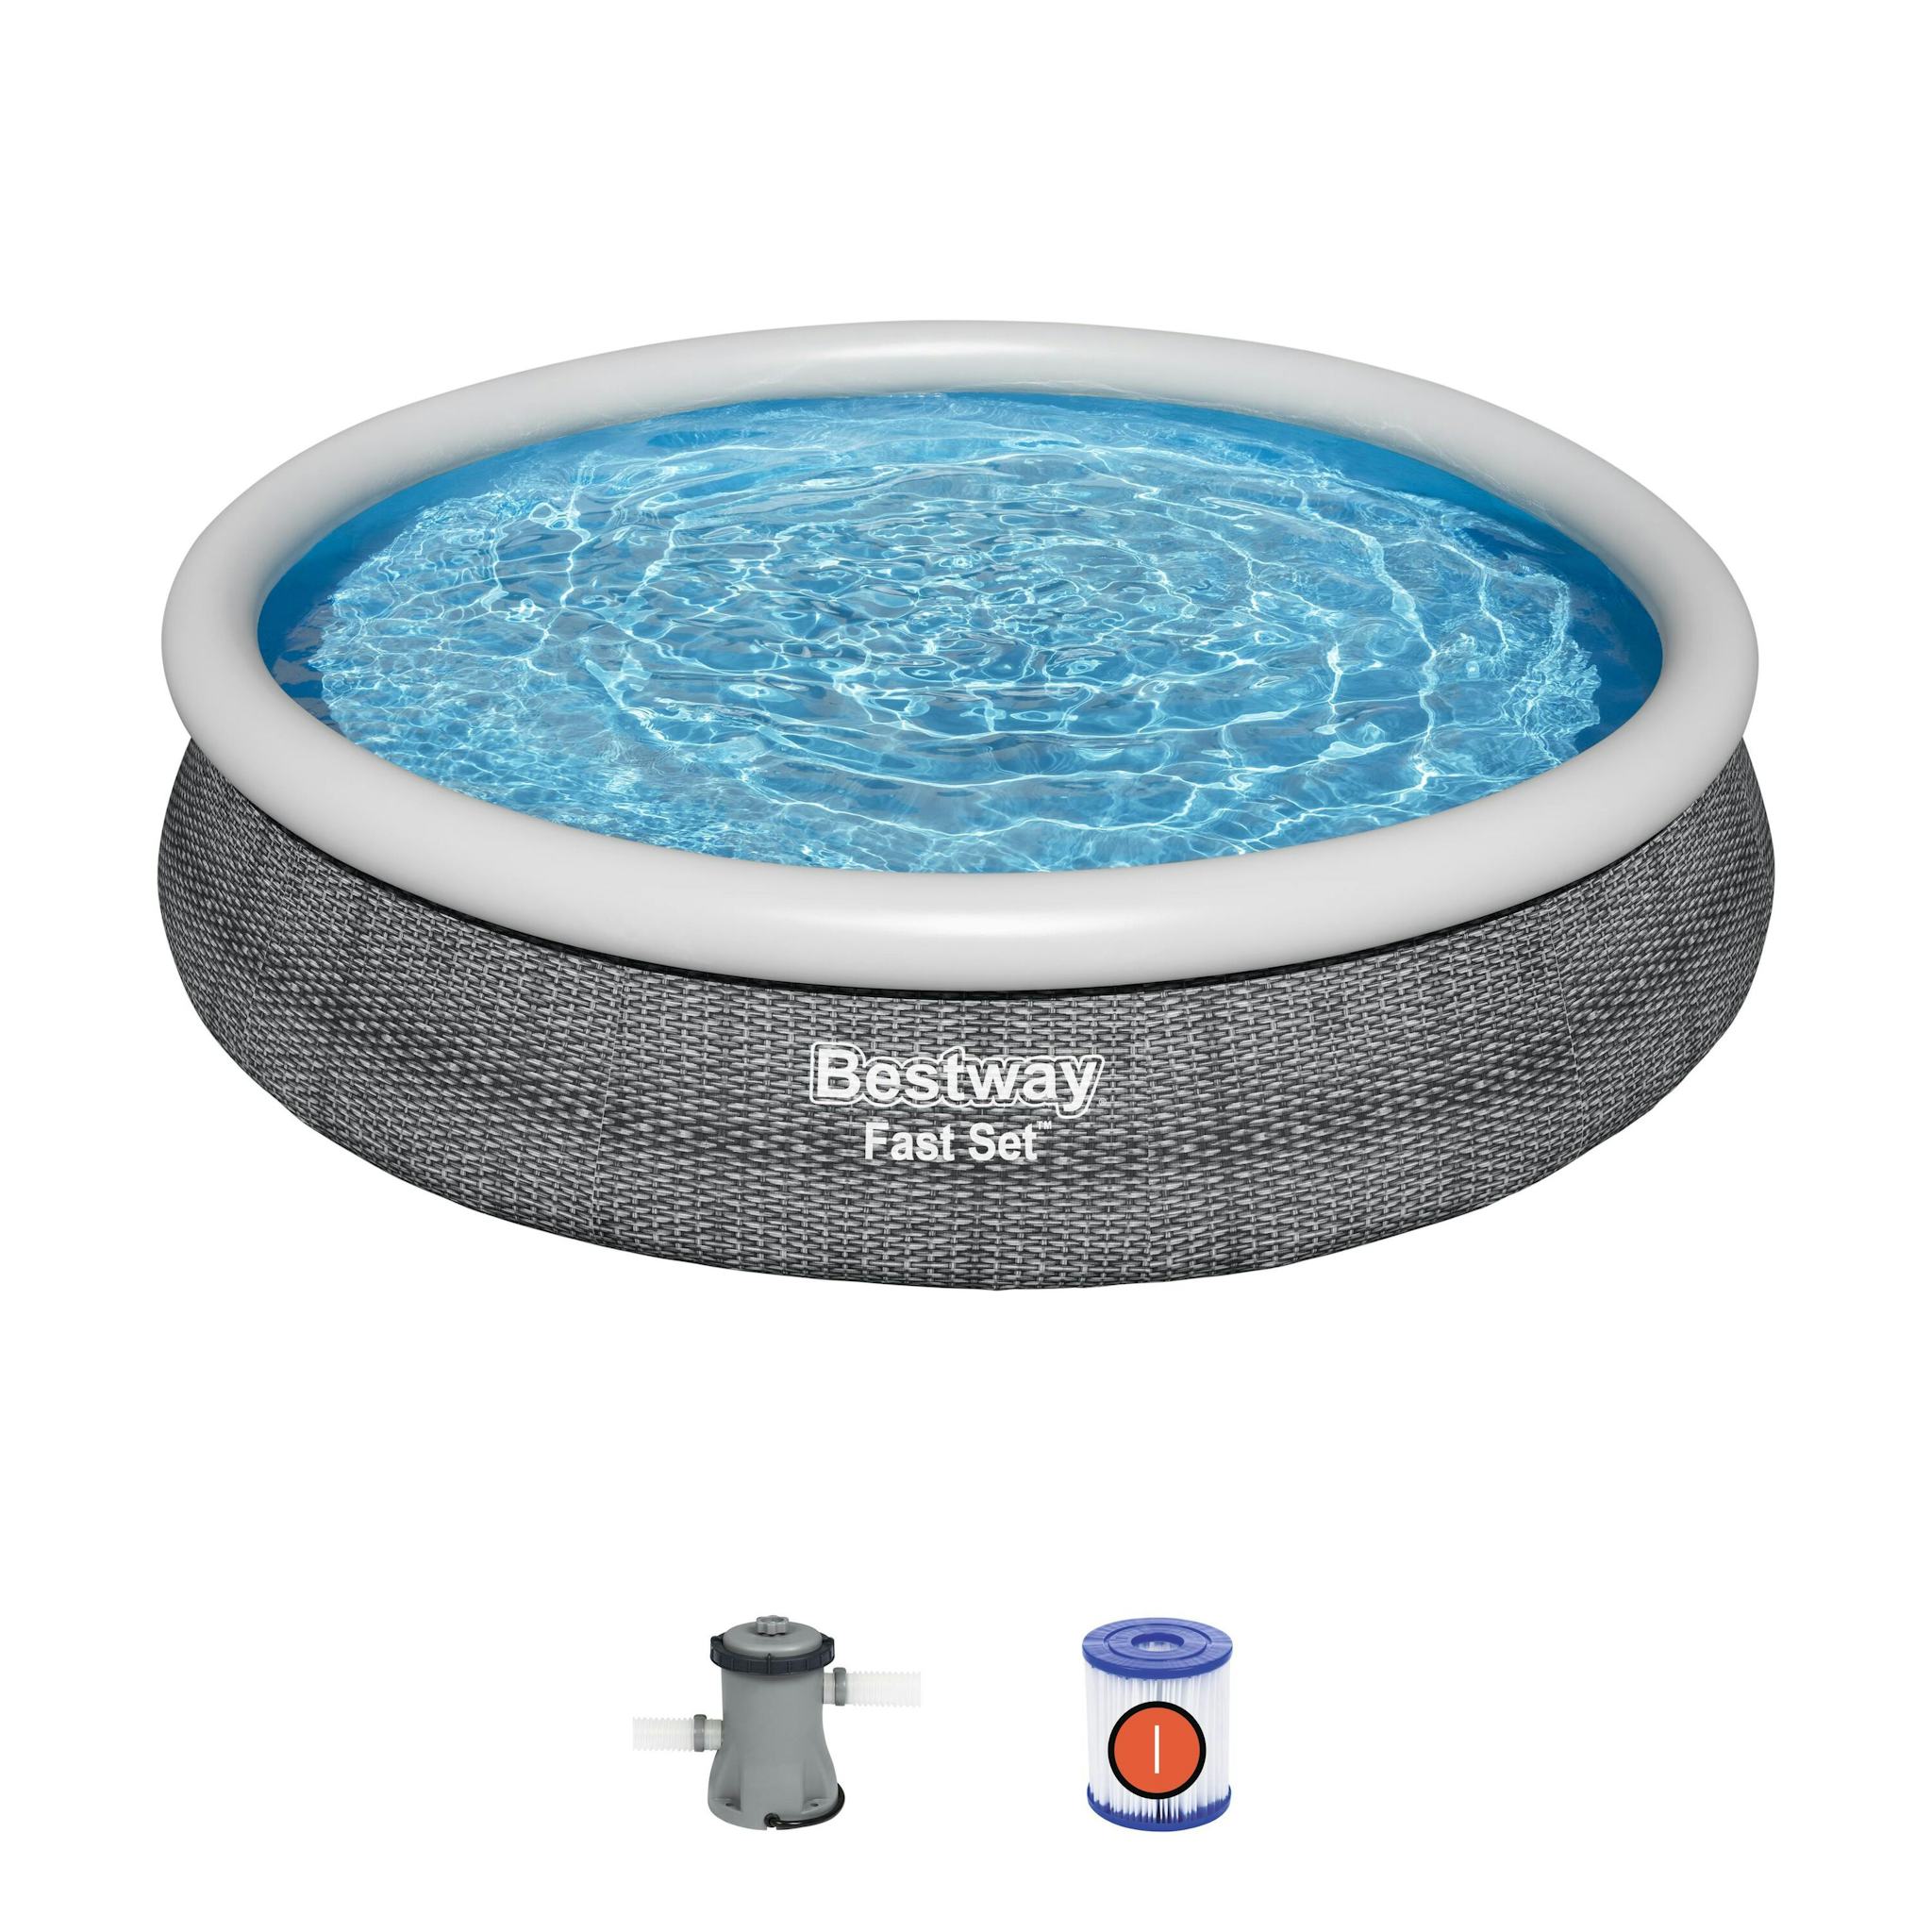 Bovengronds zwembad Fast Set grijze bovengrondse ronde opblaasbare set van 366x76 cm Bestway 2